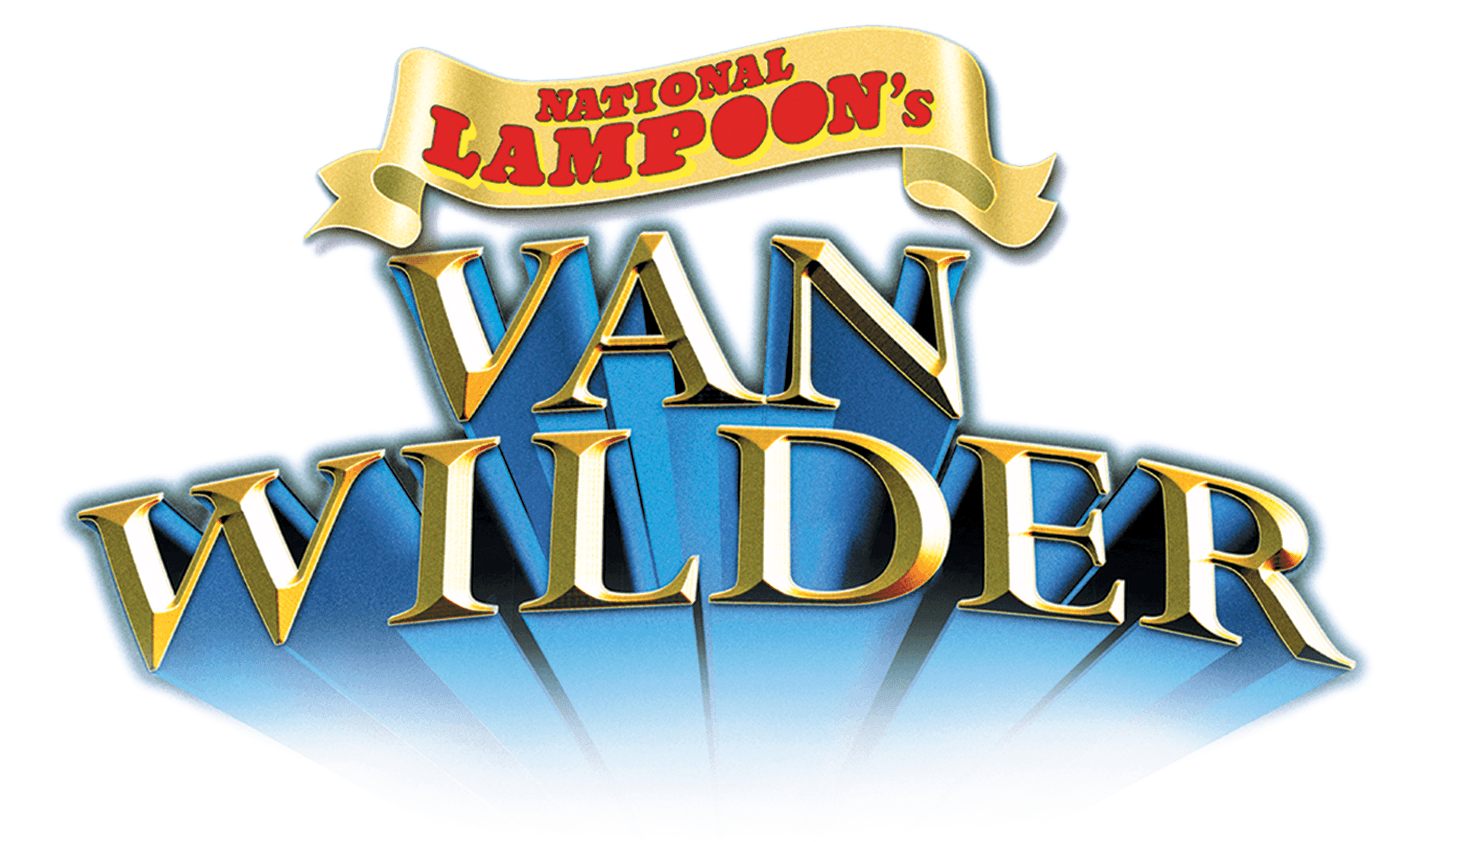 National Lampoon's Van Wilder logo